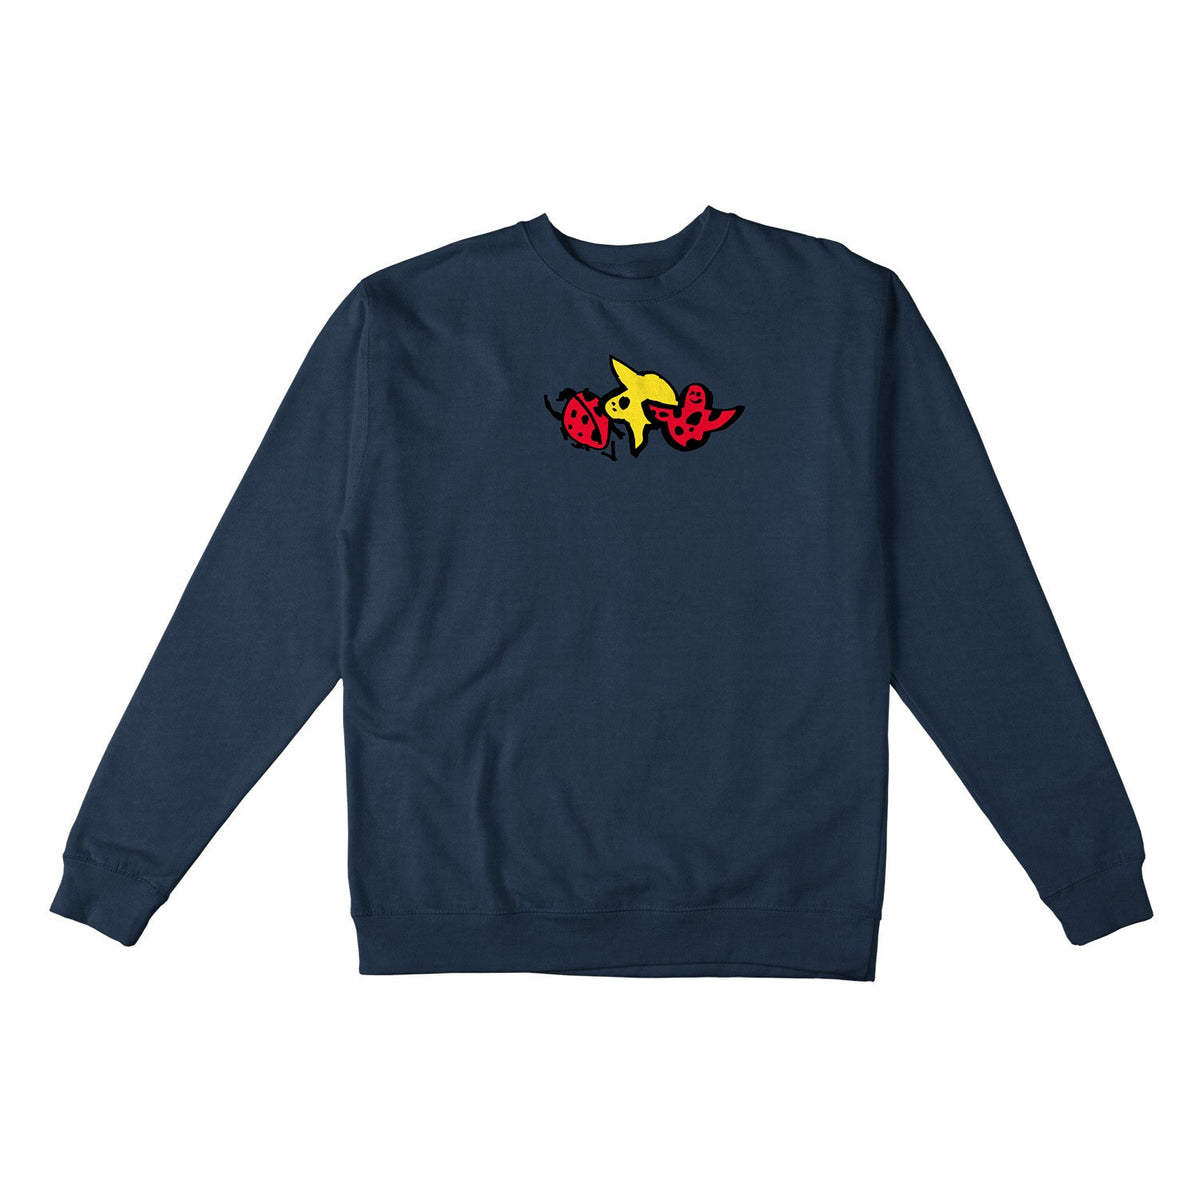 Krooked Ladybug Crewneck Sweatshirt